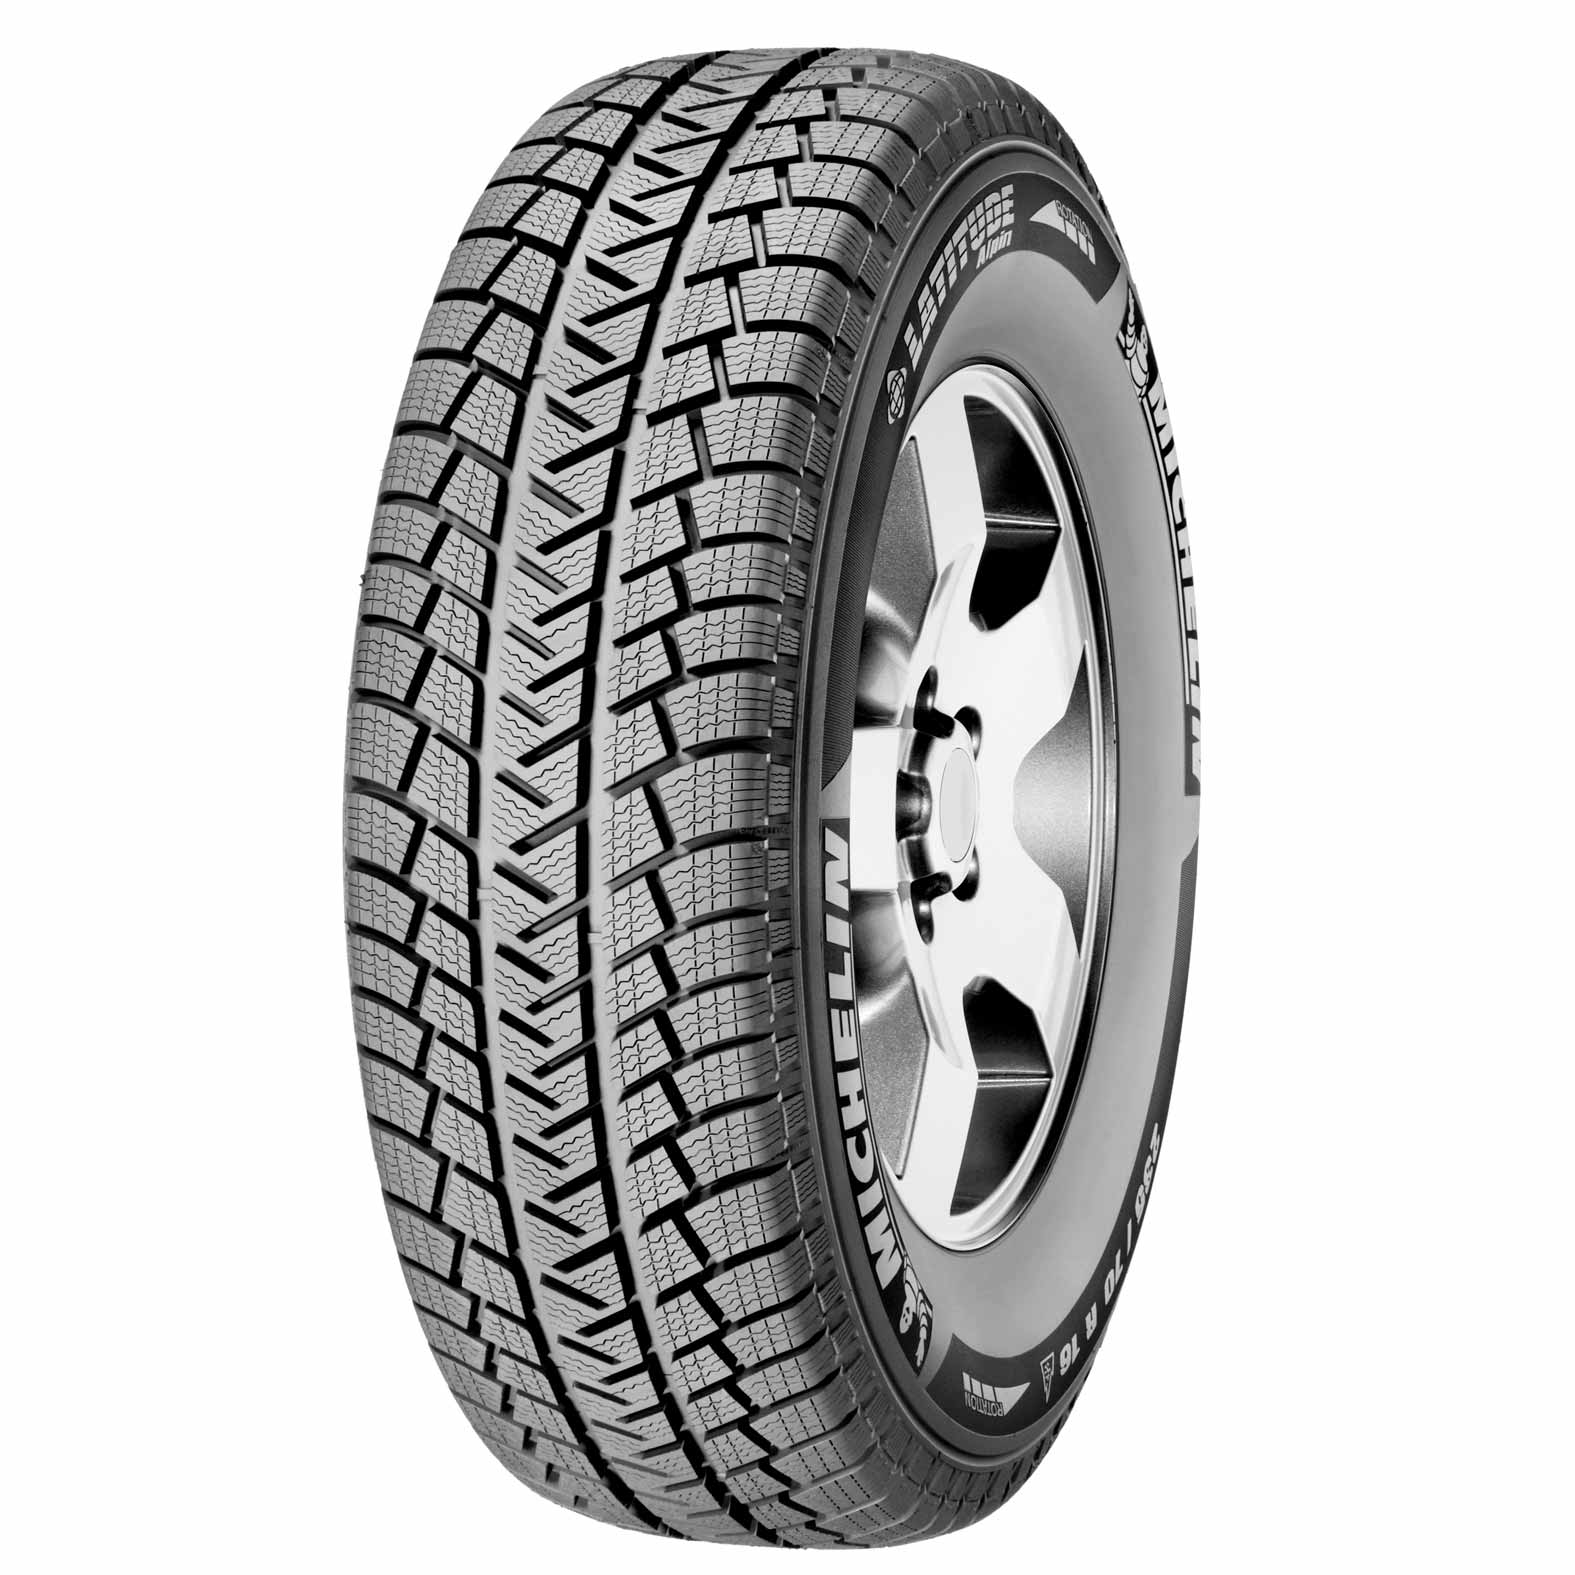 Michelin Latitude Alpin Tires for Winter | Kal tire